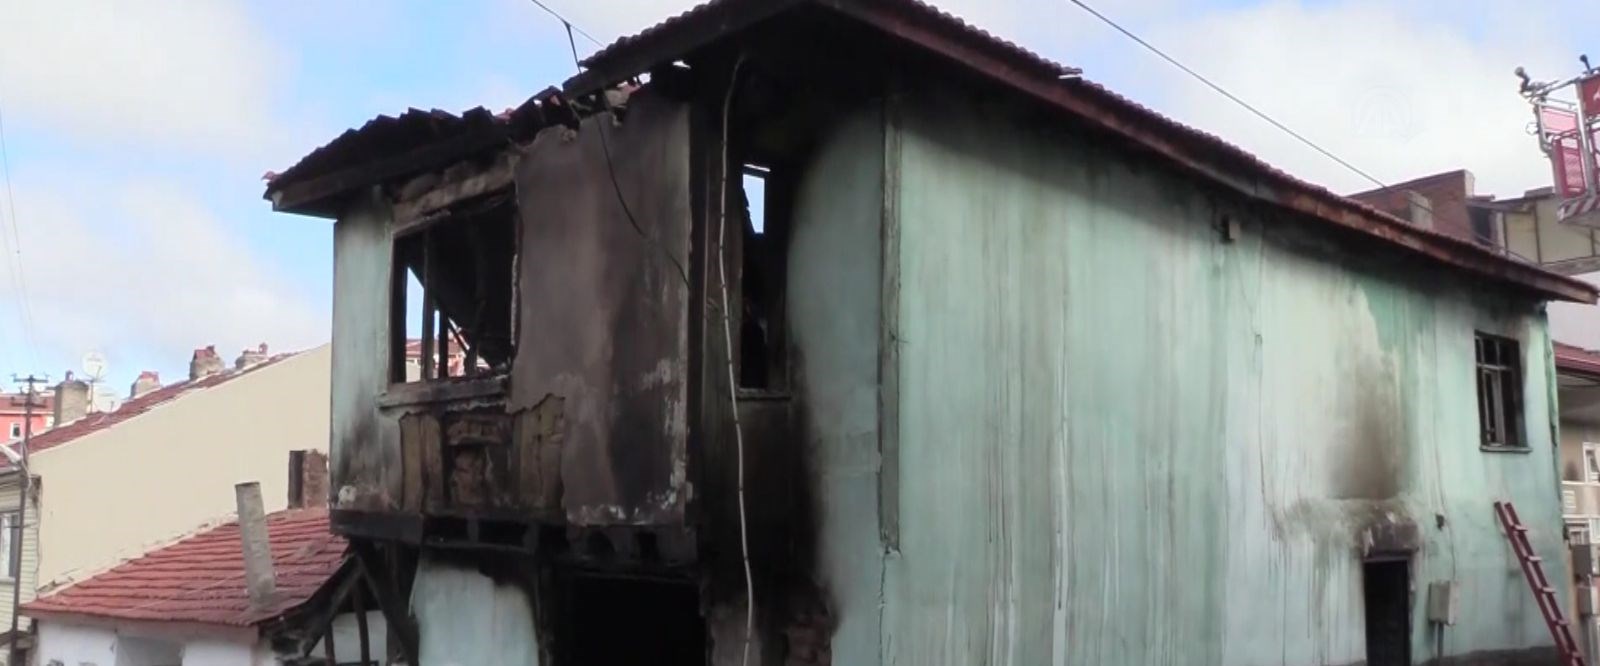 Eskişehir’de ev yangını: 2 ölü